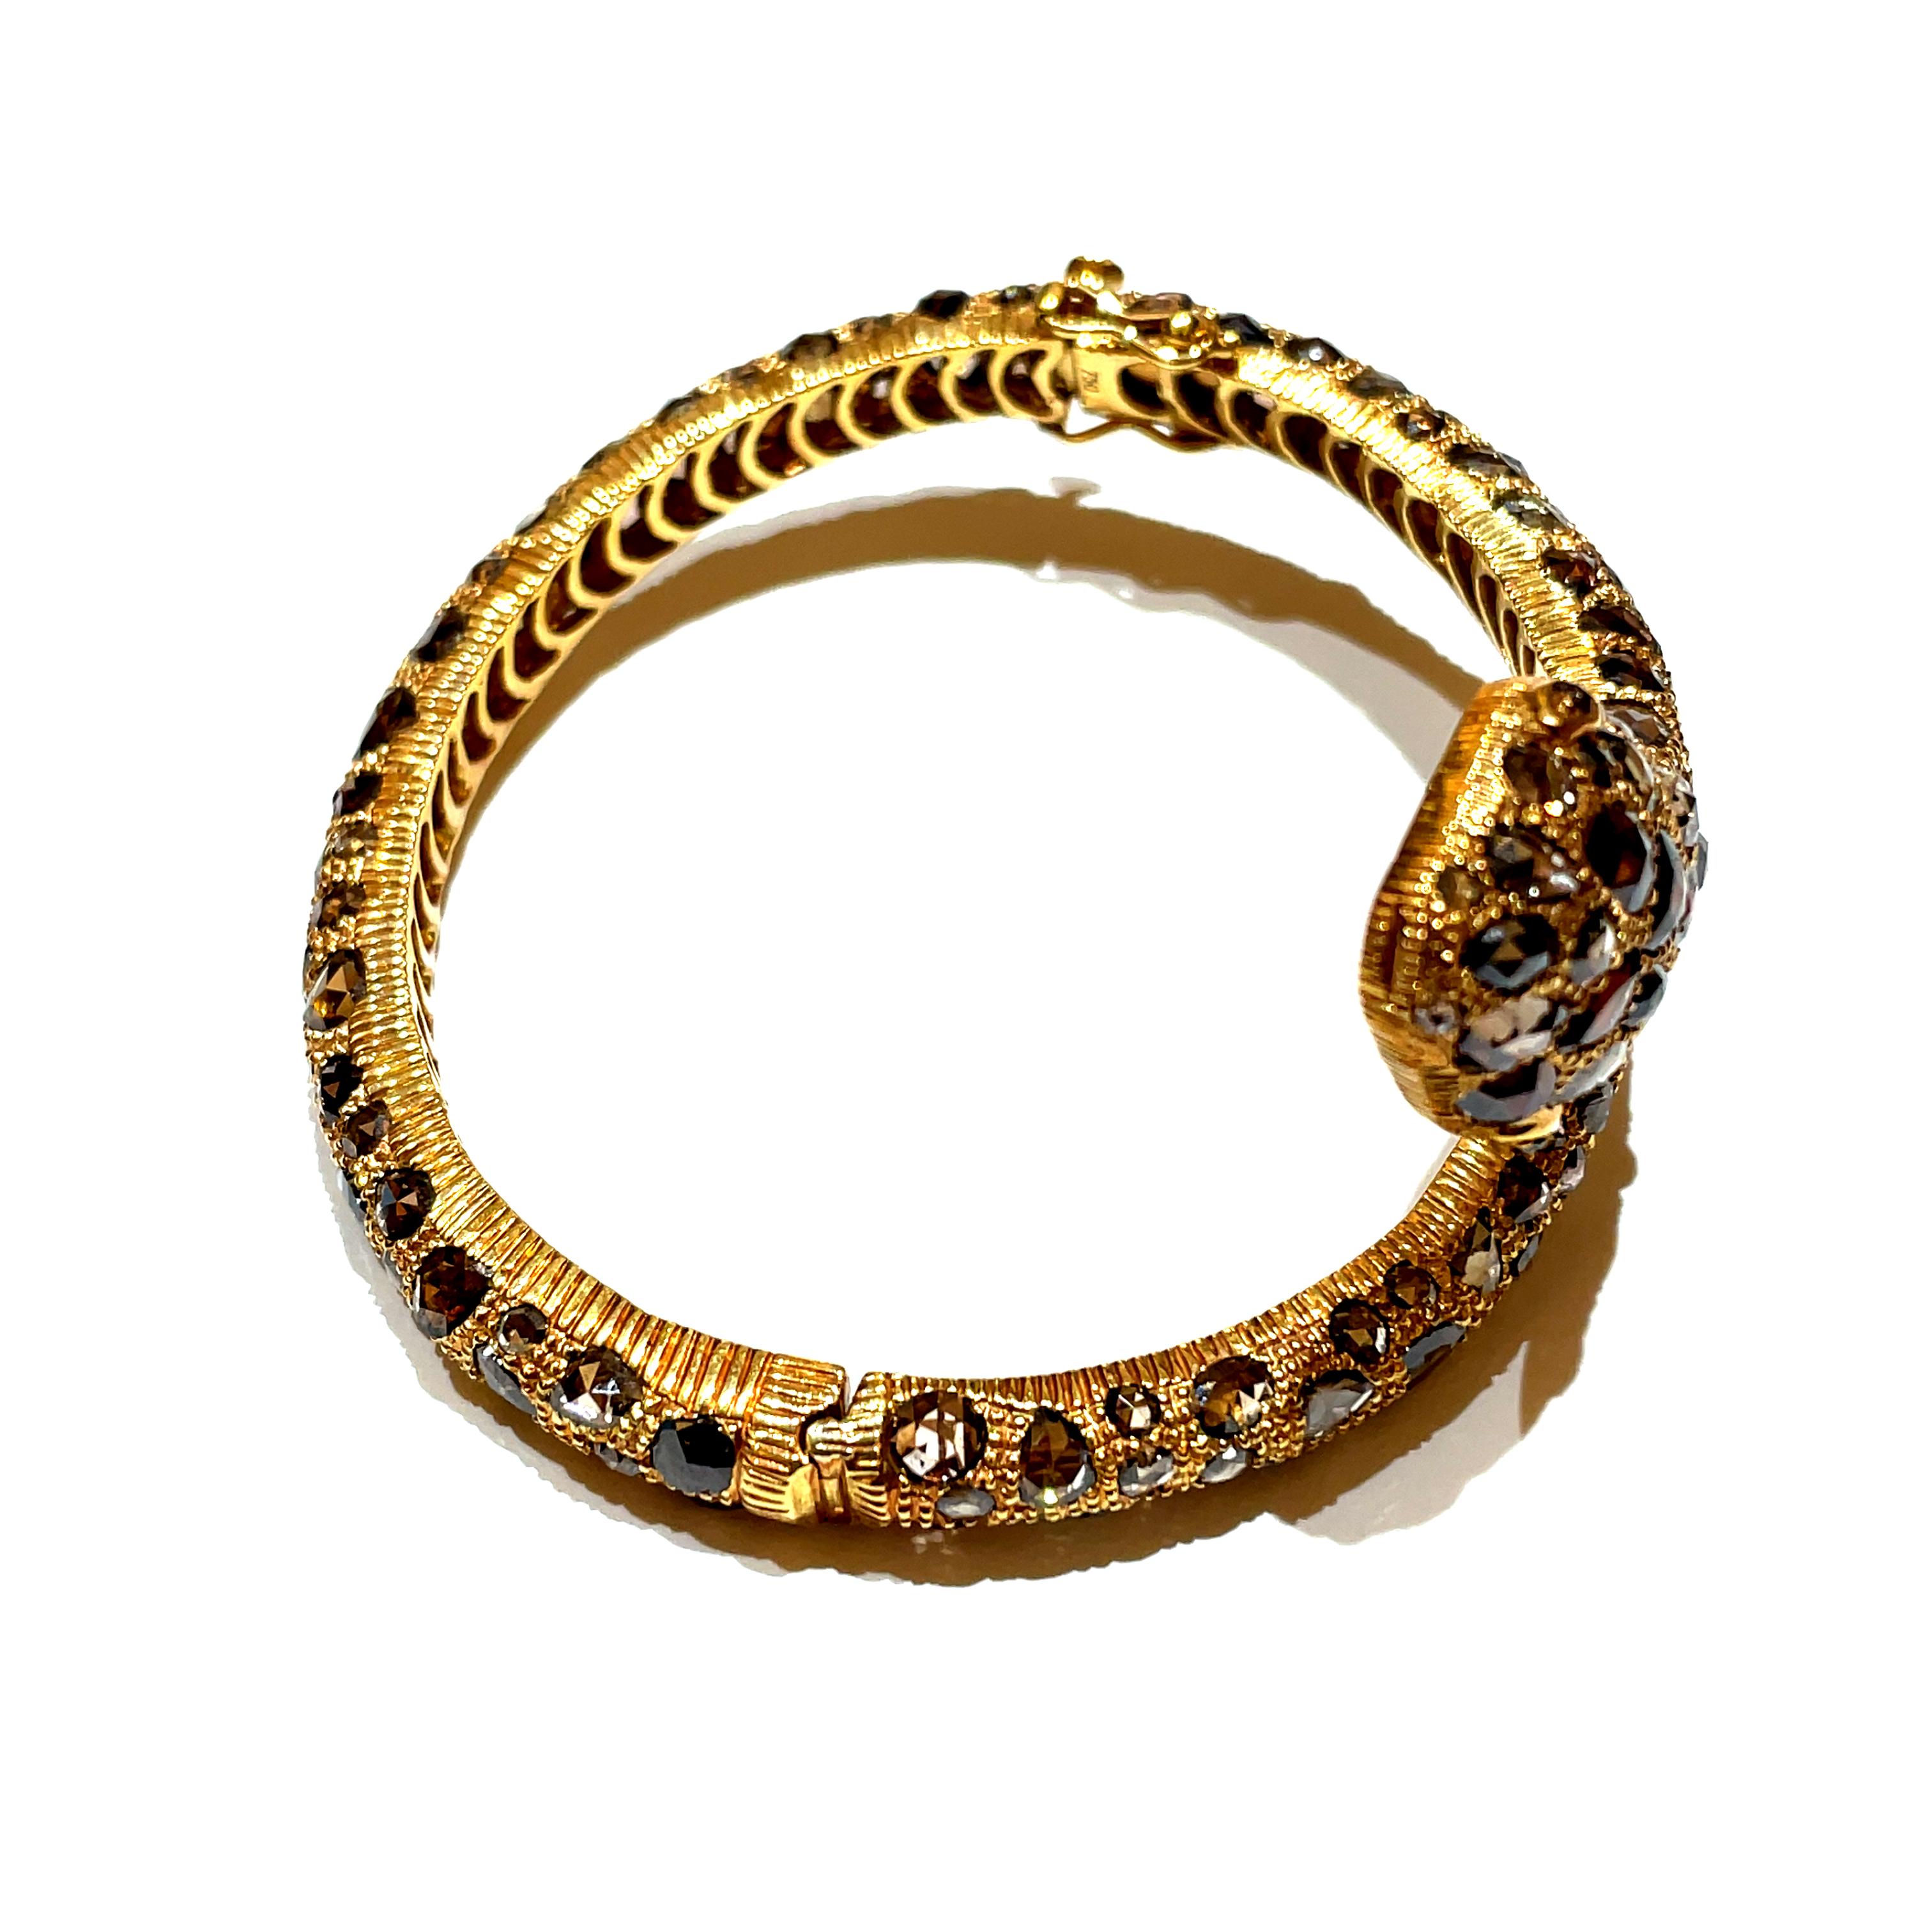 Der Armreif Glam Snake aus 18 Karat Gelbgold entfaltet am Handgelenk eine Geschichte von Opulenz und Verführung. 

Sein kompliziertes Design, das mit 158 braunen Diamanten im Rosenschliff von insgesamt 18,46 Karat verziert ist, erinnert an die